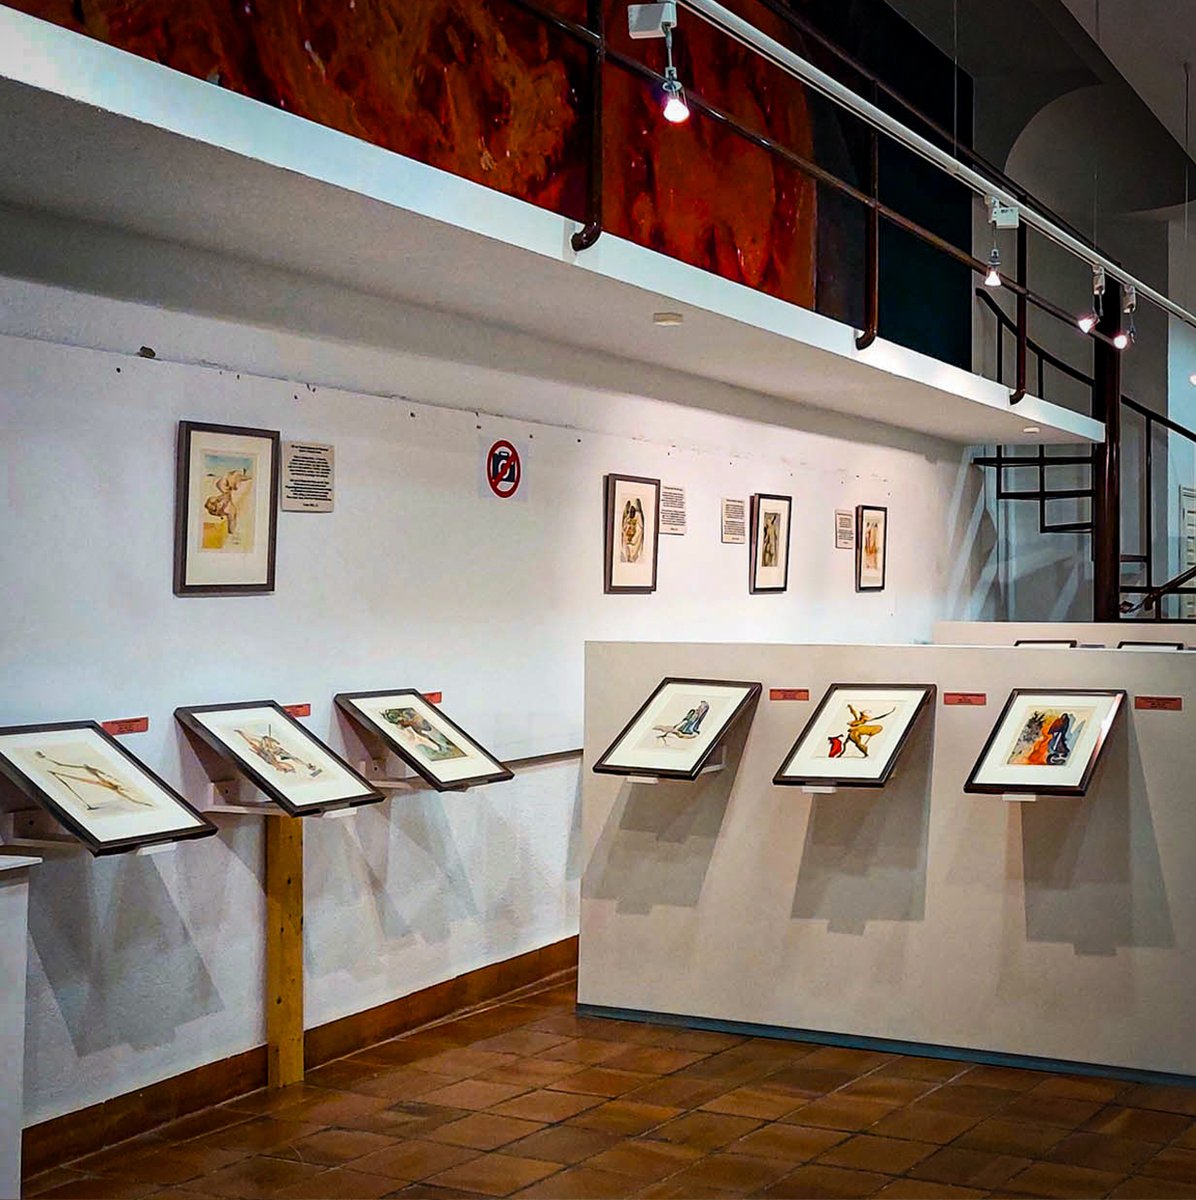 ¿Conoces el @MuseoCasaBolas? Se encuentra en #ArandadeDuero y cuenta con una colección de grabados de Dalí sobre La Divina Comedia de Dante, de gran calidad artística. Además, alberga pinturas de la colección privada de Félix Cañada. #Riberate #LaRiberadeTodos